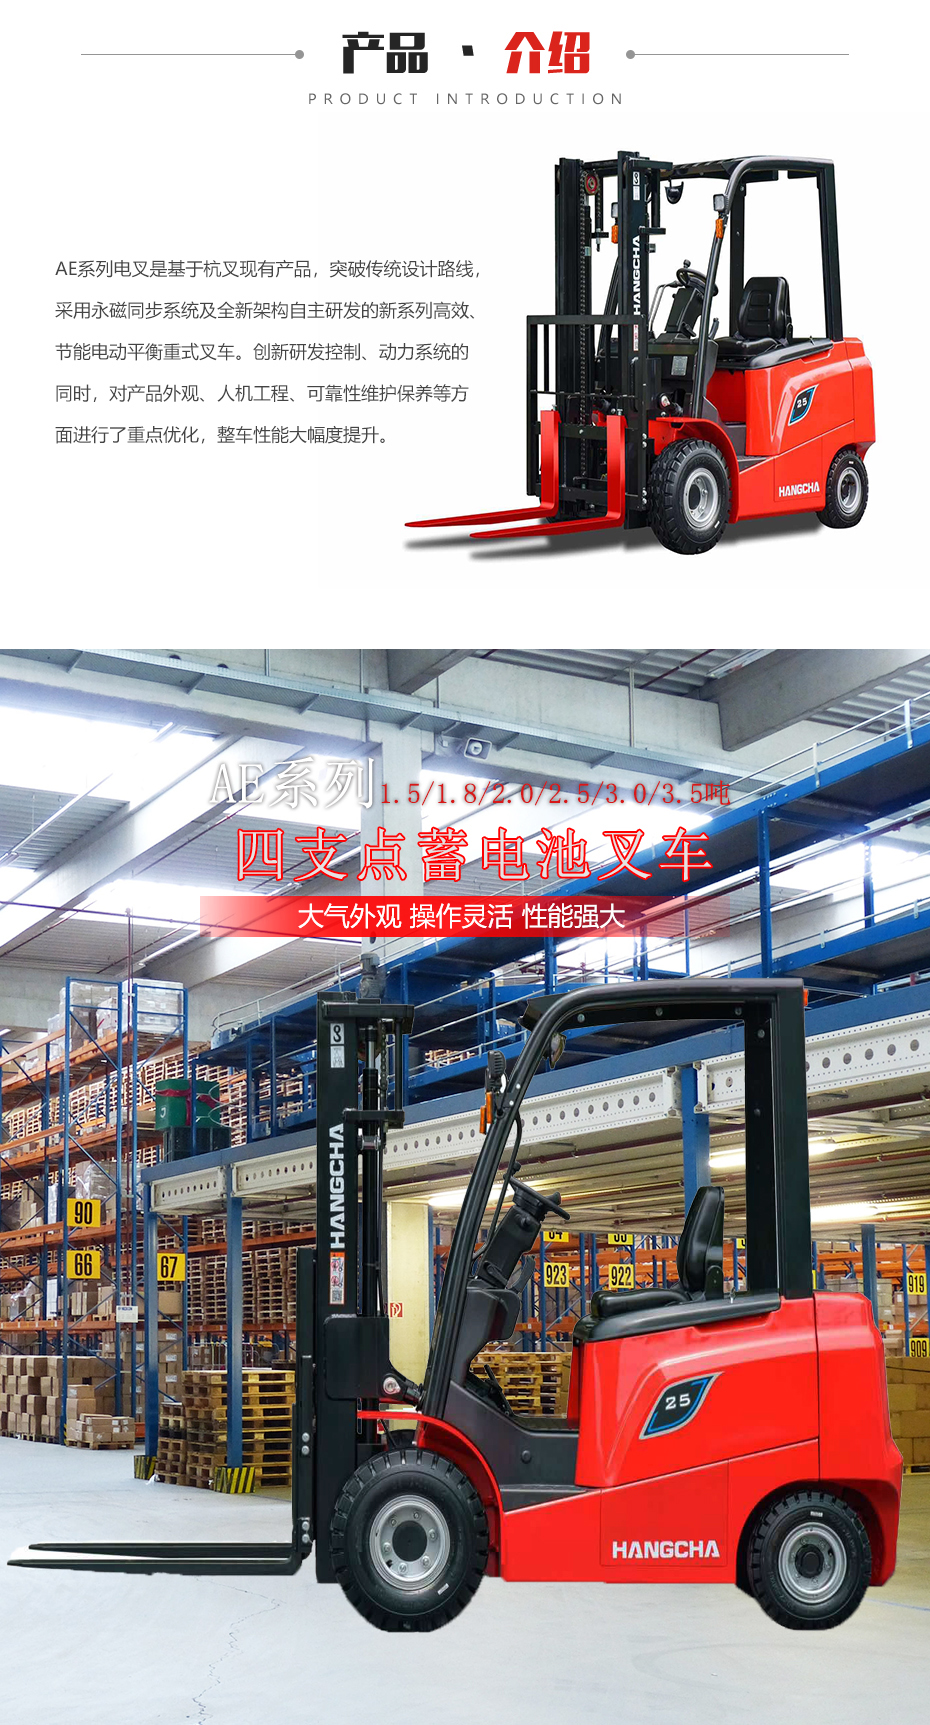 AE系列1.5~3.5噸電動叉車產品介紹圖片